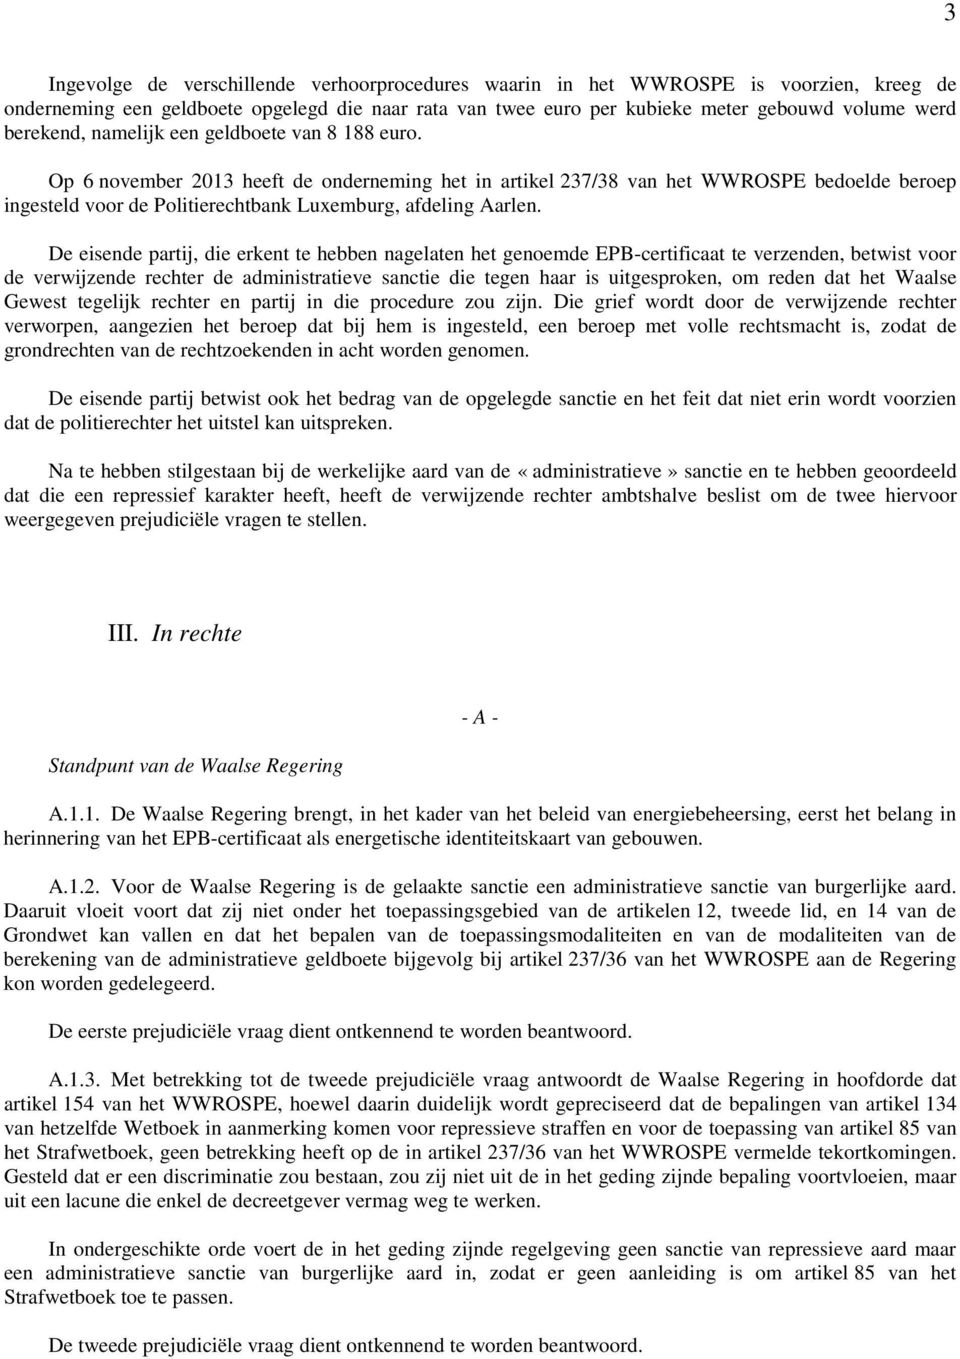 Op 6 november 2013 heeft de onderneming het in artikel 237/38 van het WWROSPE bedoelde beroep ingesteld voor de Politierechtbank Luxemburg, afdeling Aarlen.